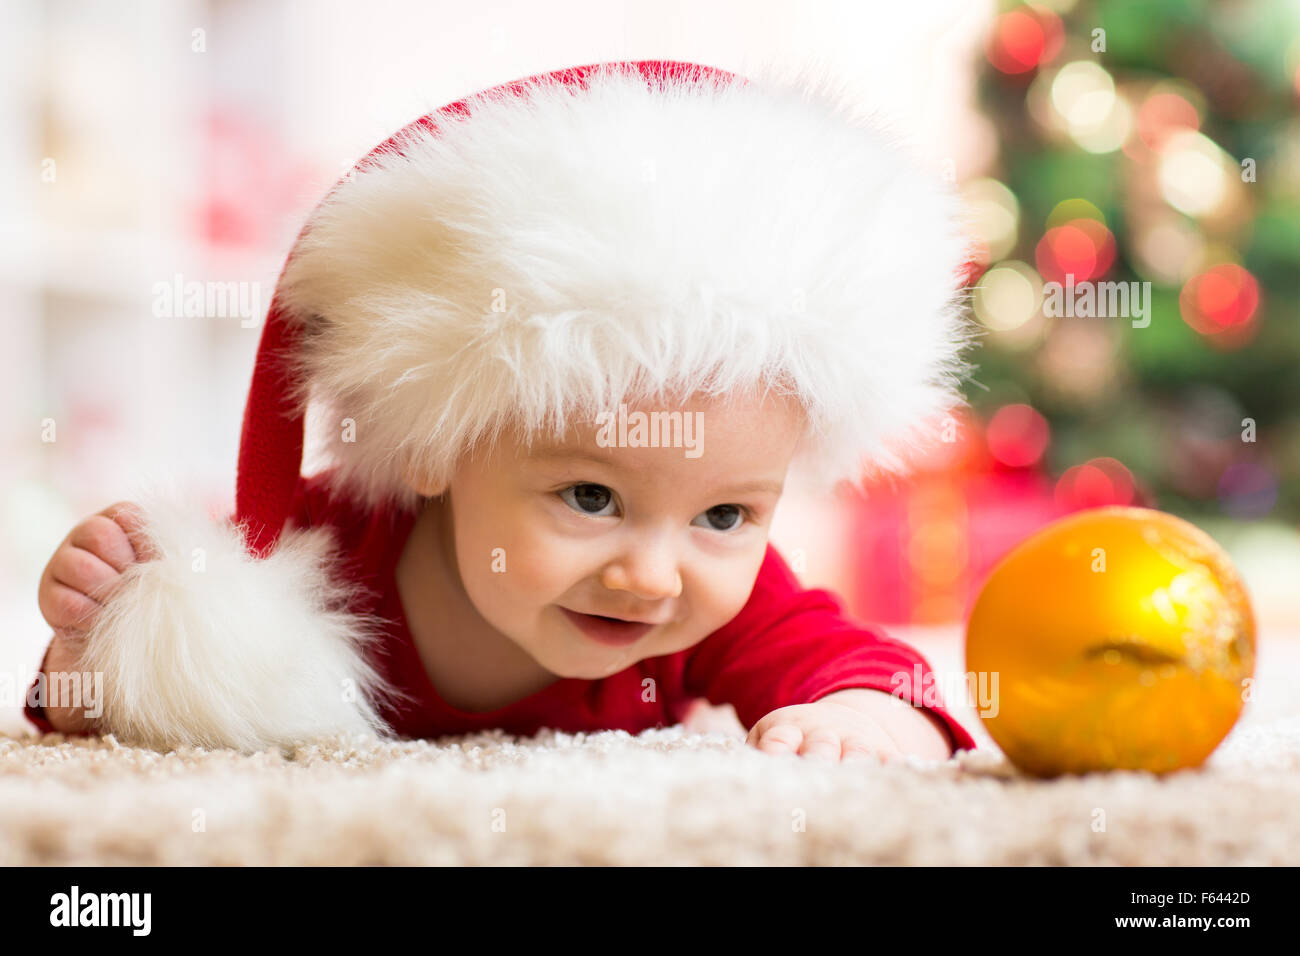 Funny Baby en Santa Claus ropa con arbol de navidad Foto de stock